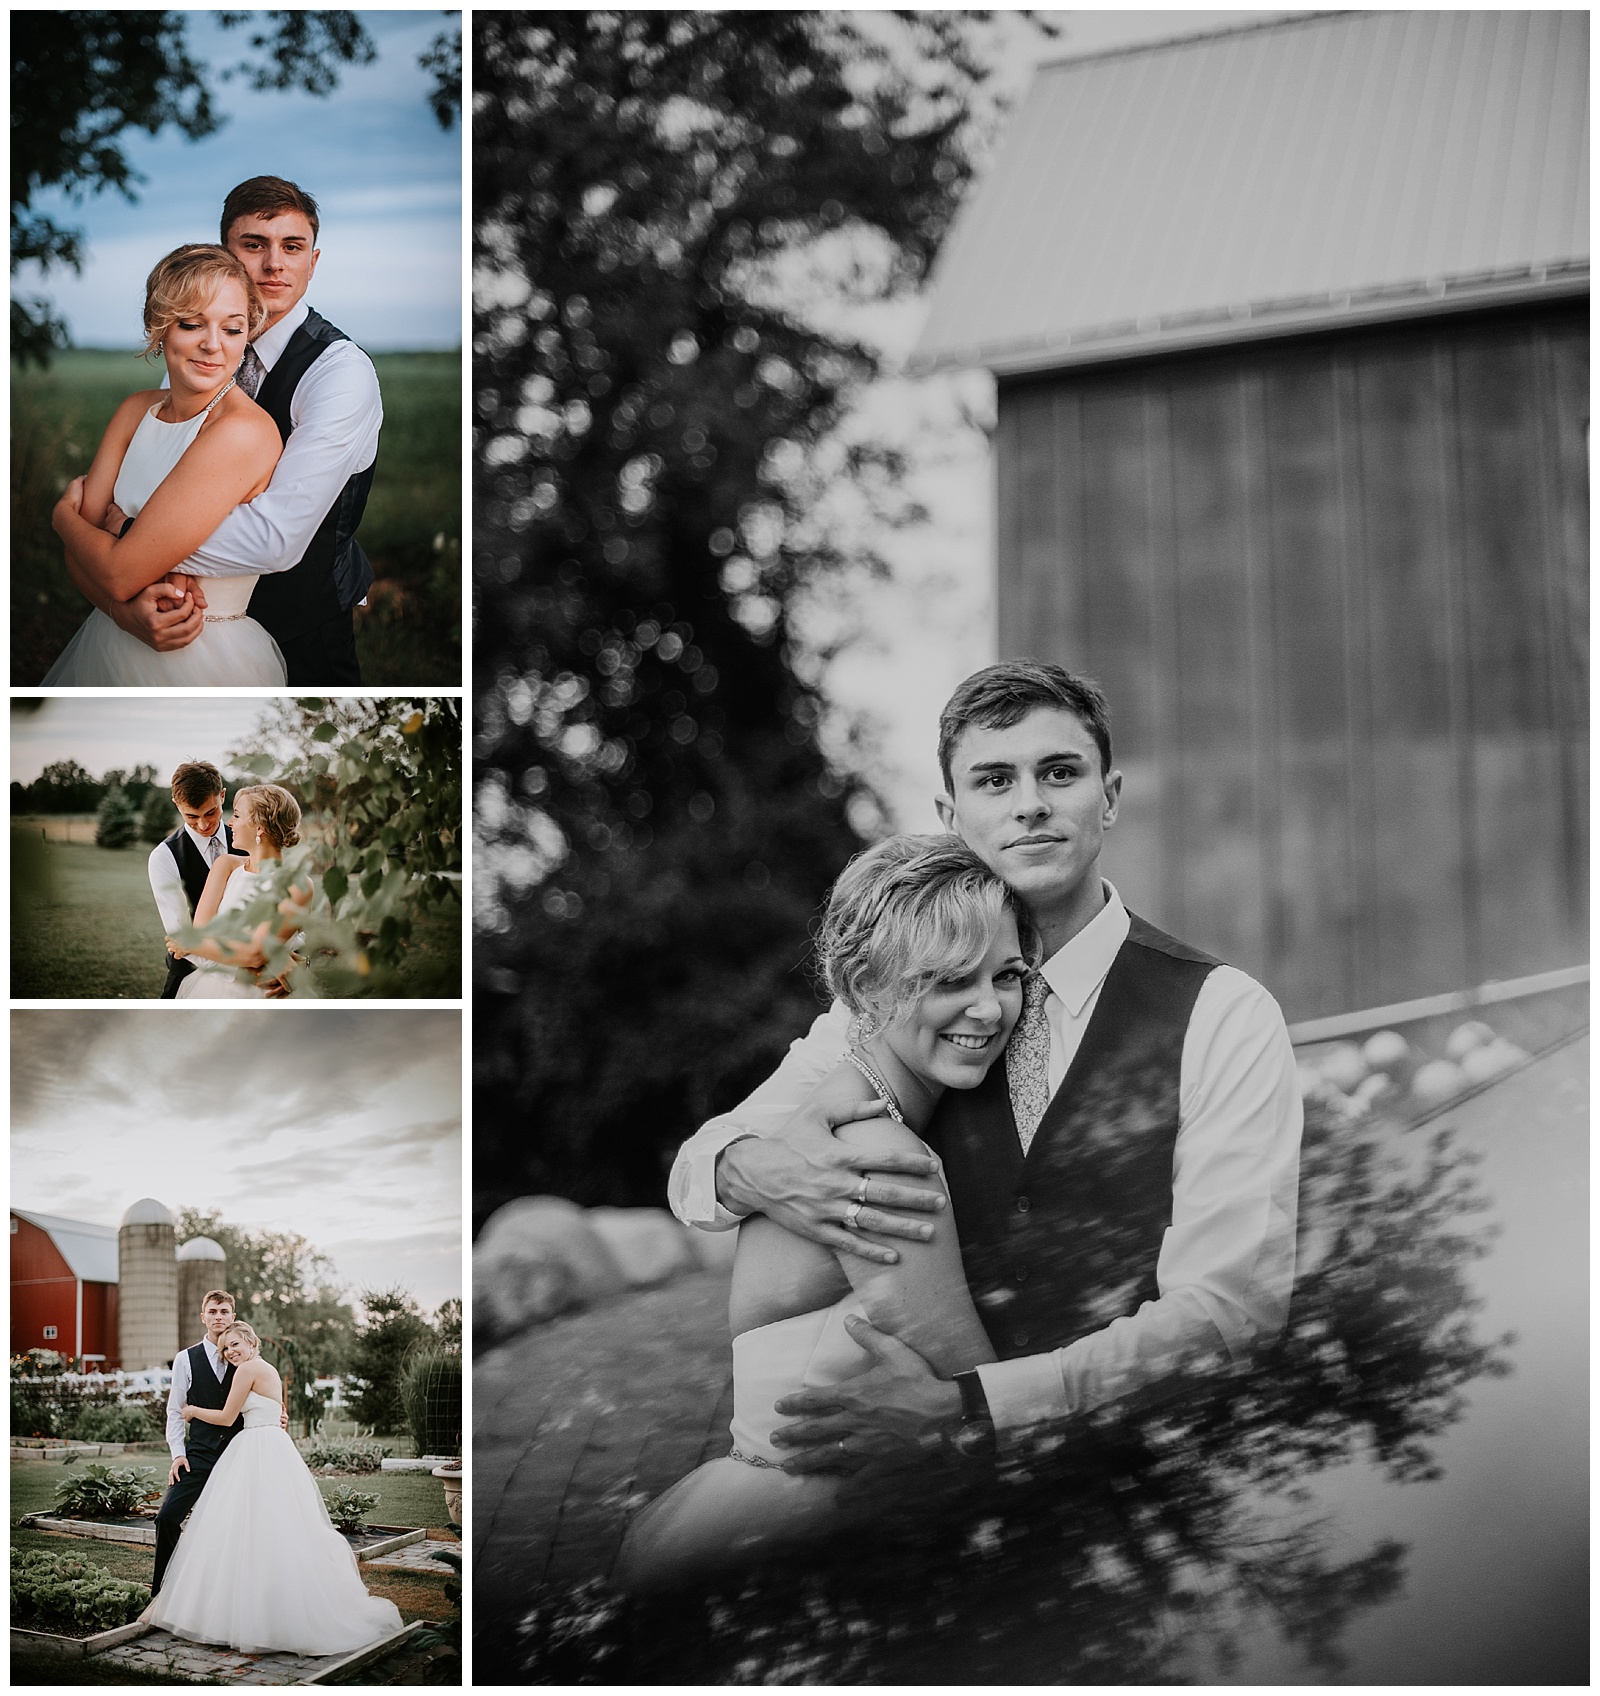 Grand Rapids Wedding Photographer at Wildwood Family Farms